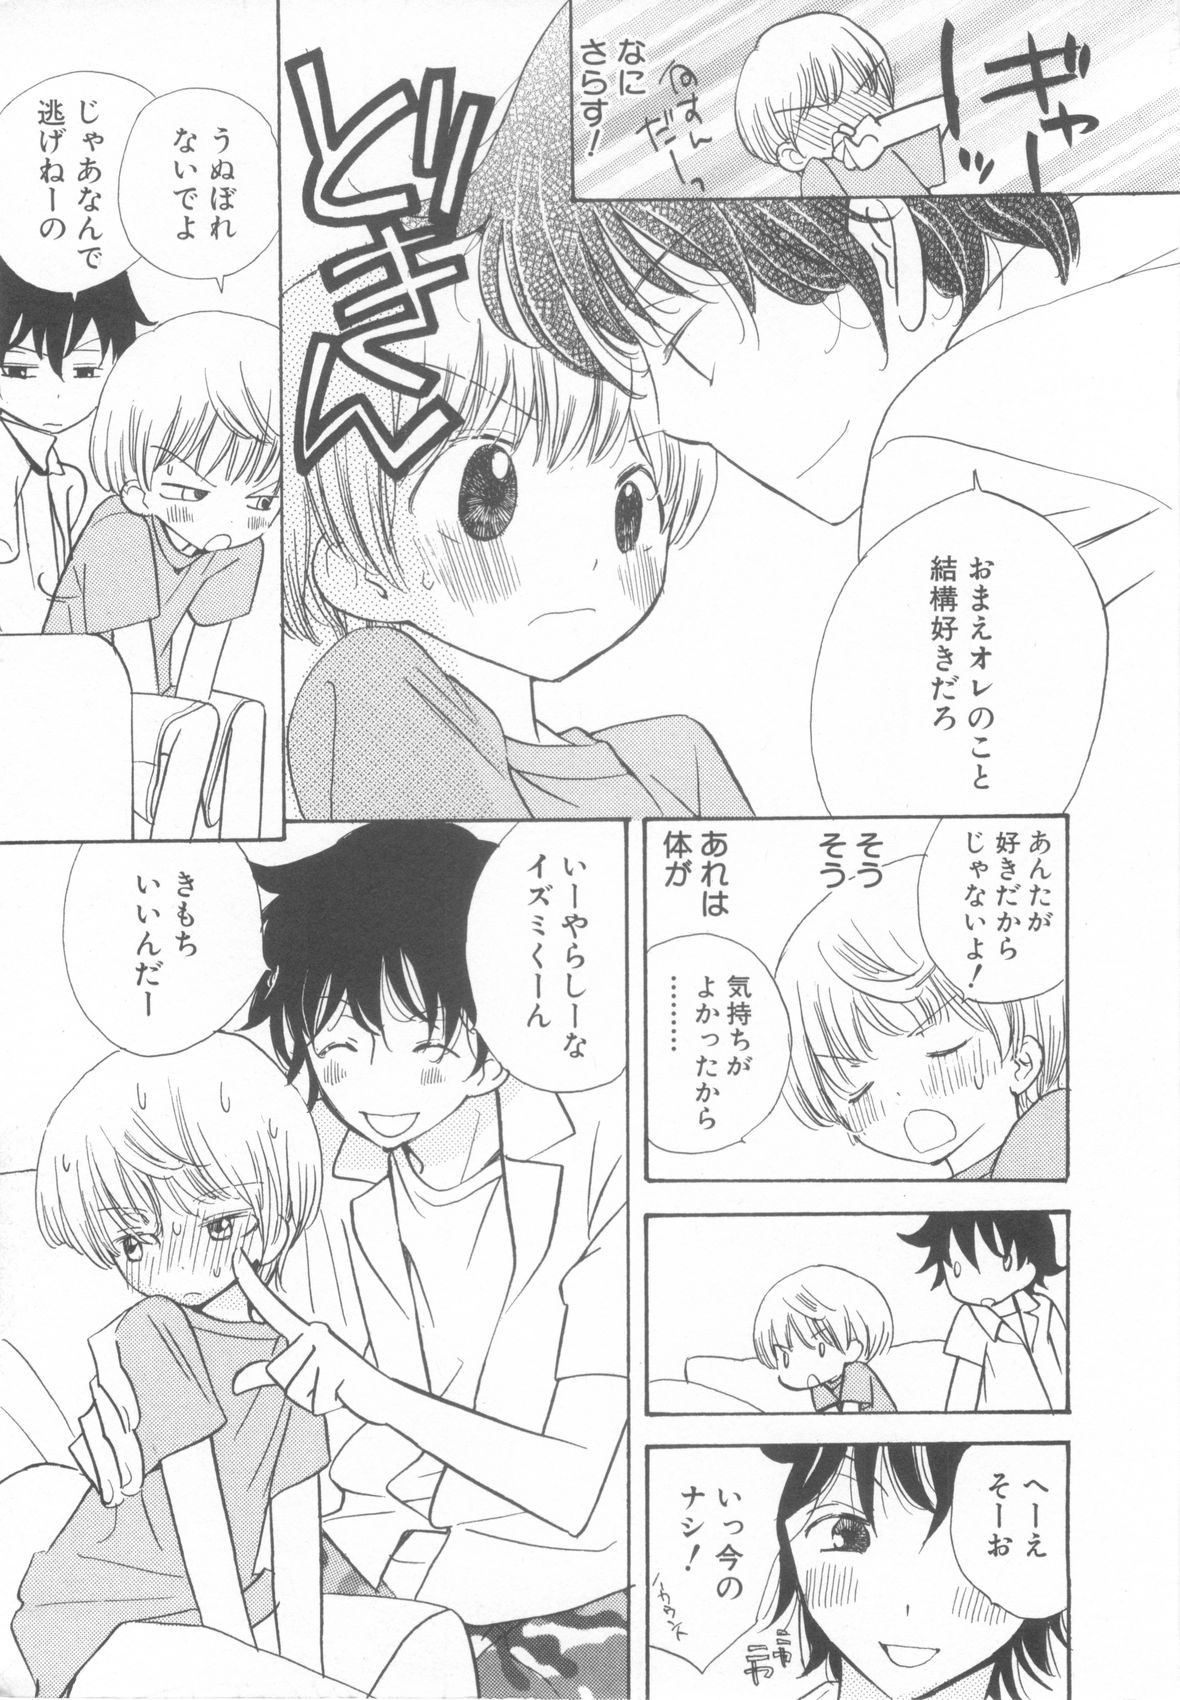 [Anthology] Shota Tama Vol. 3 page 13 full